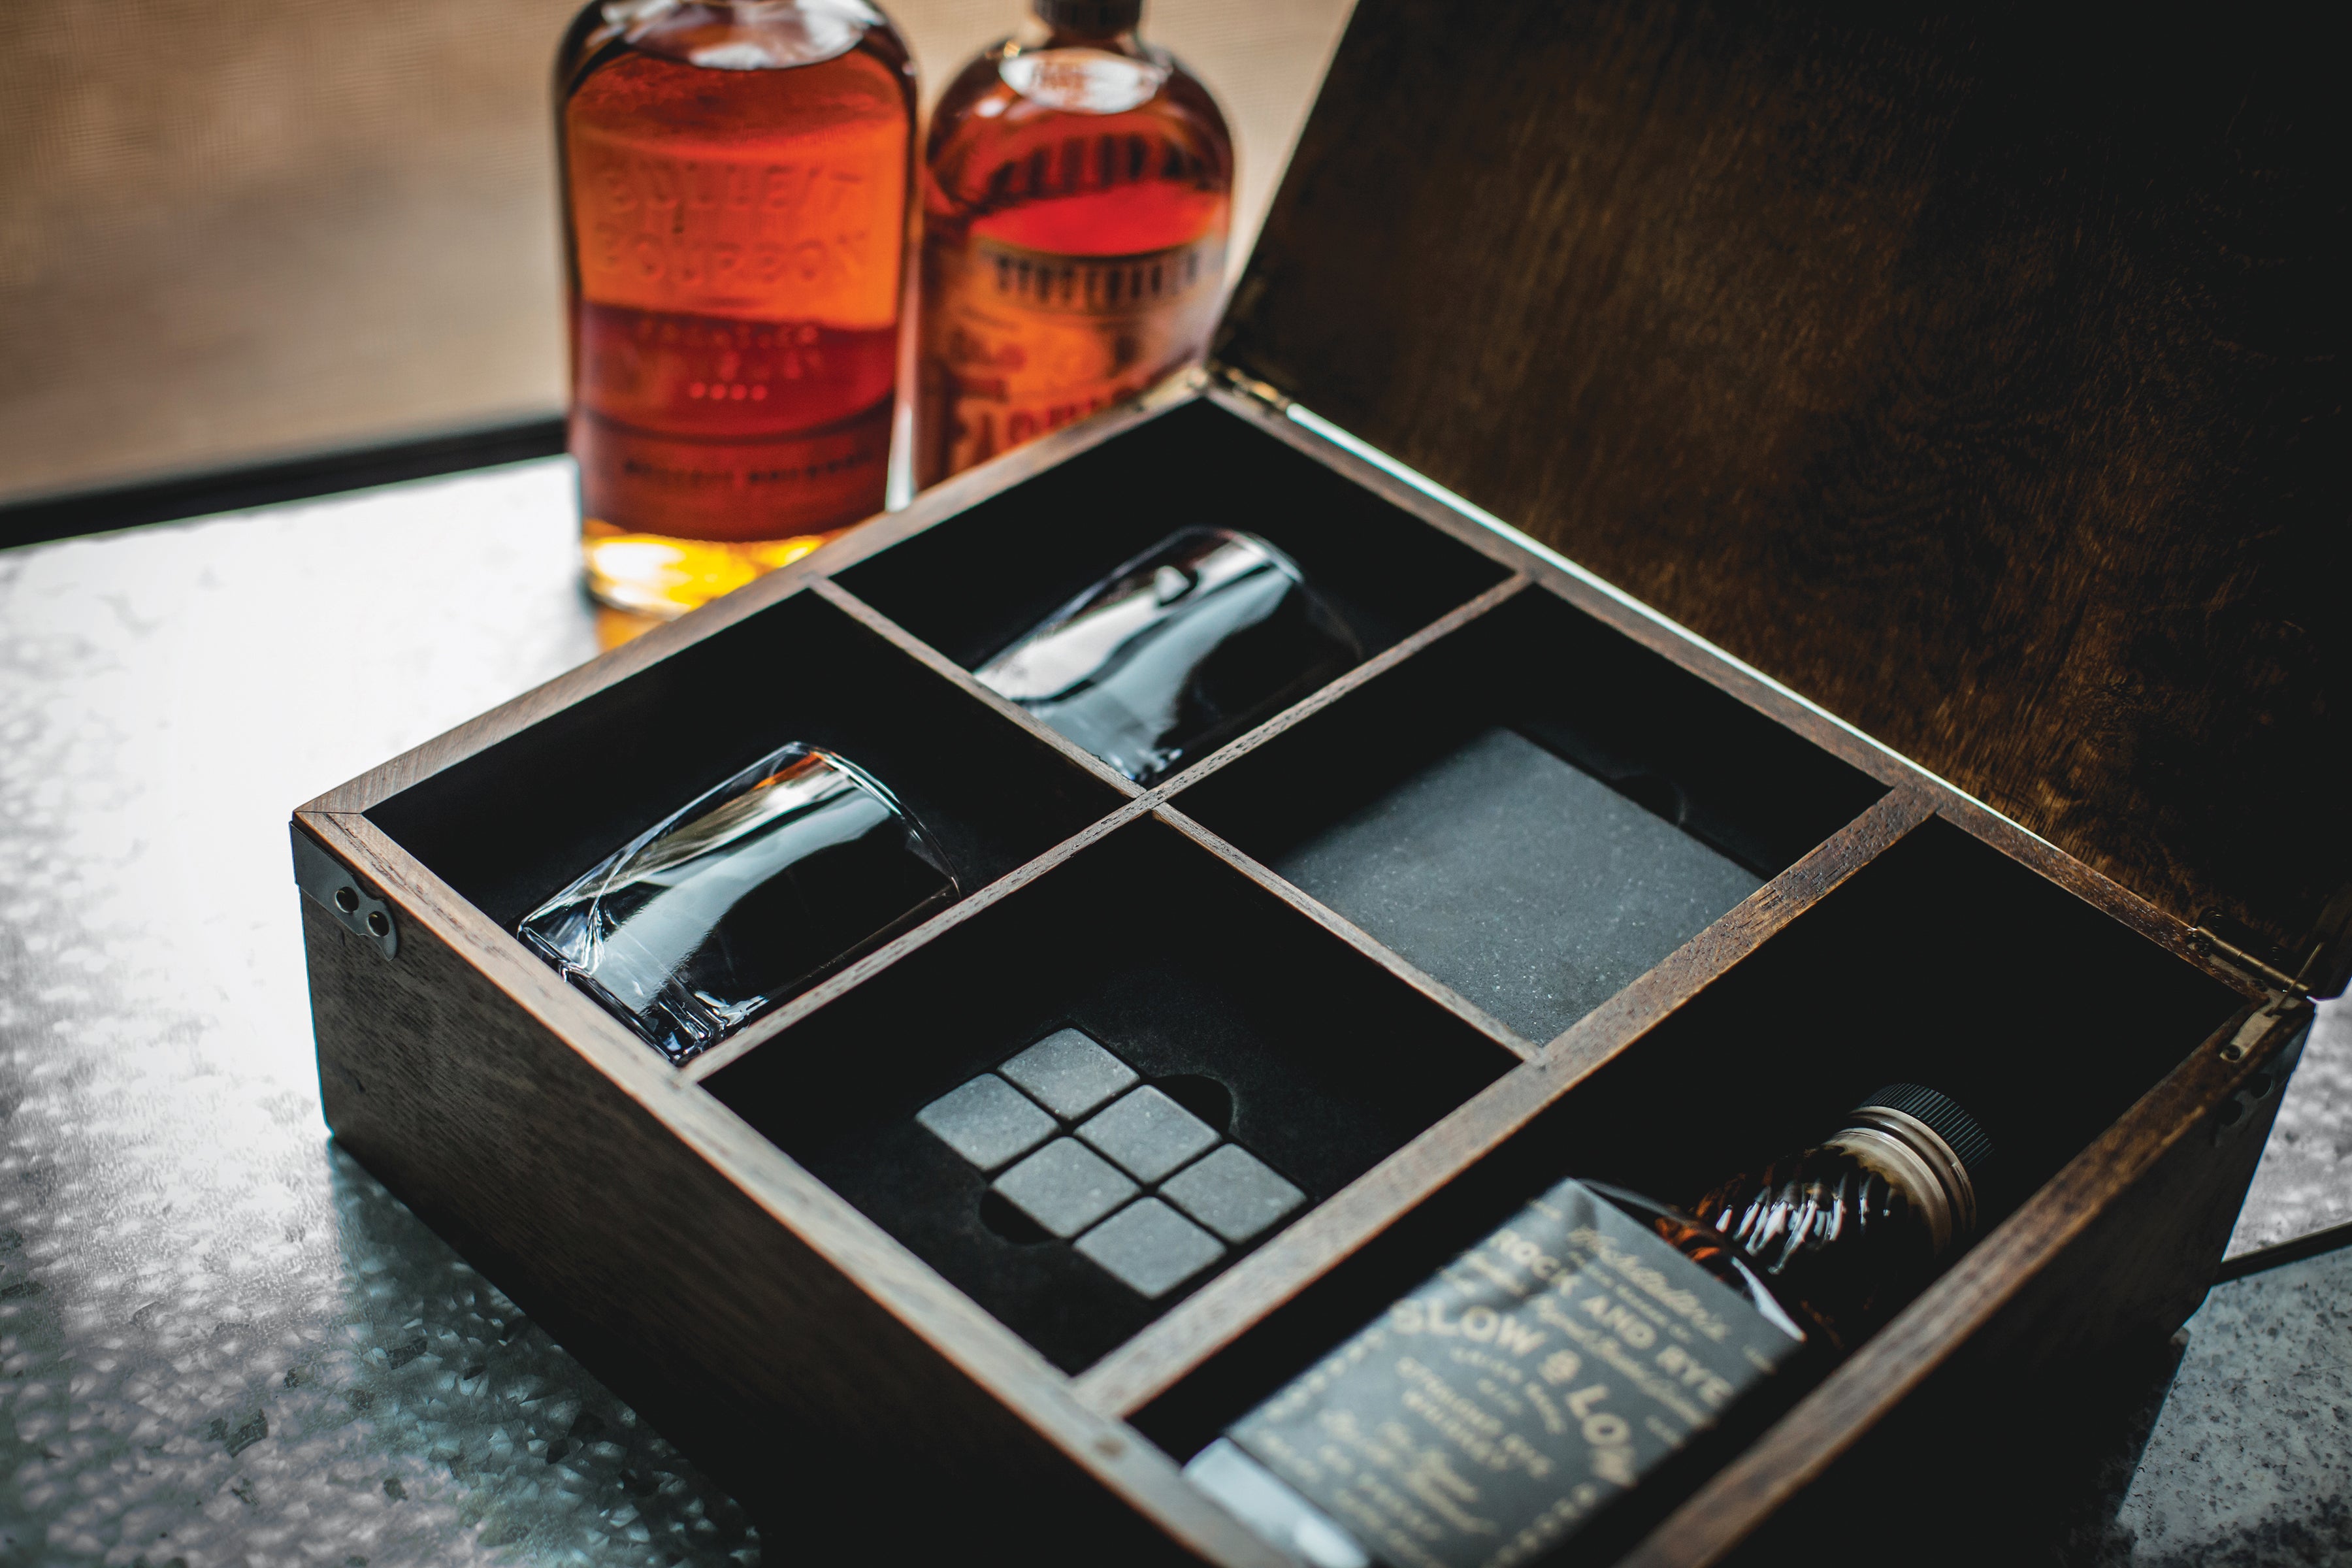 Washington Capitals - Whiskey Box Gift Set